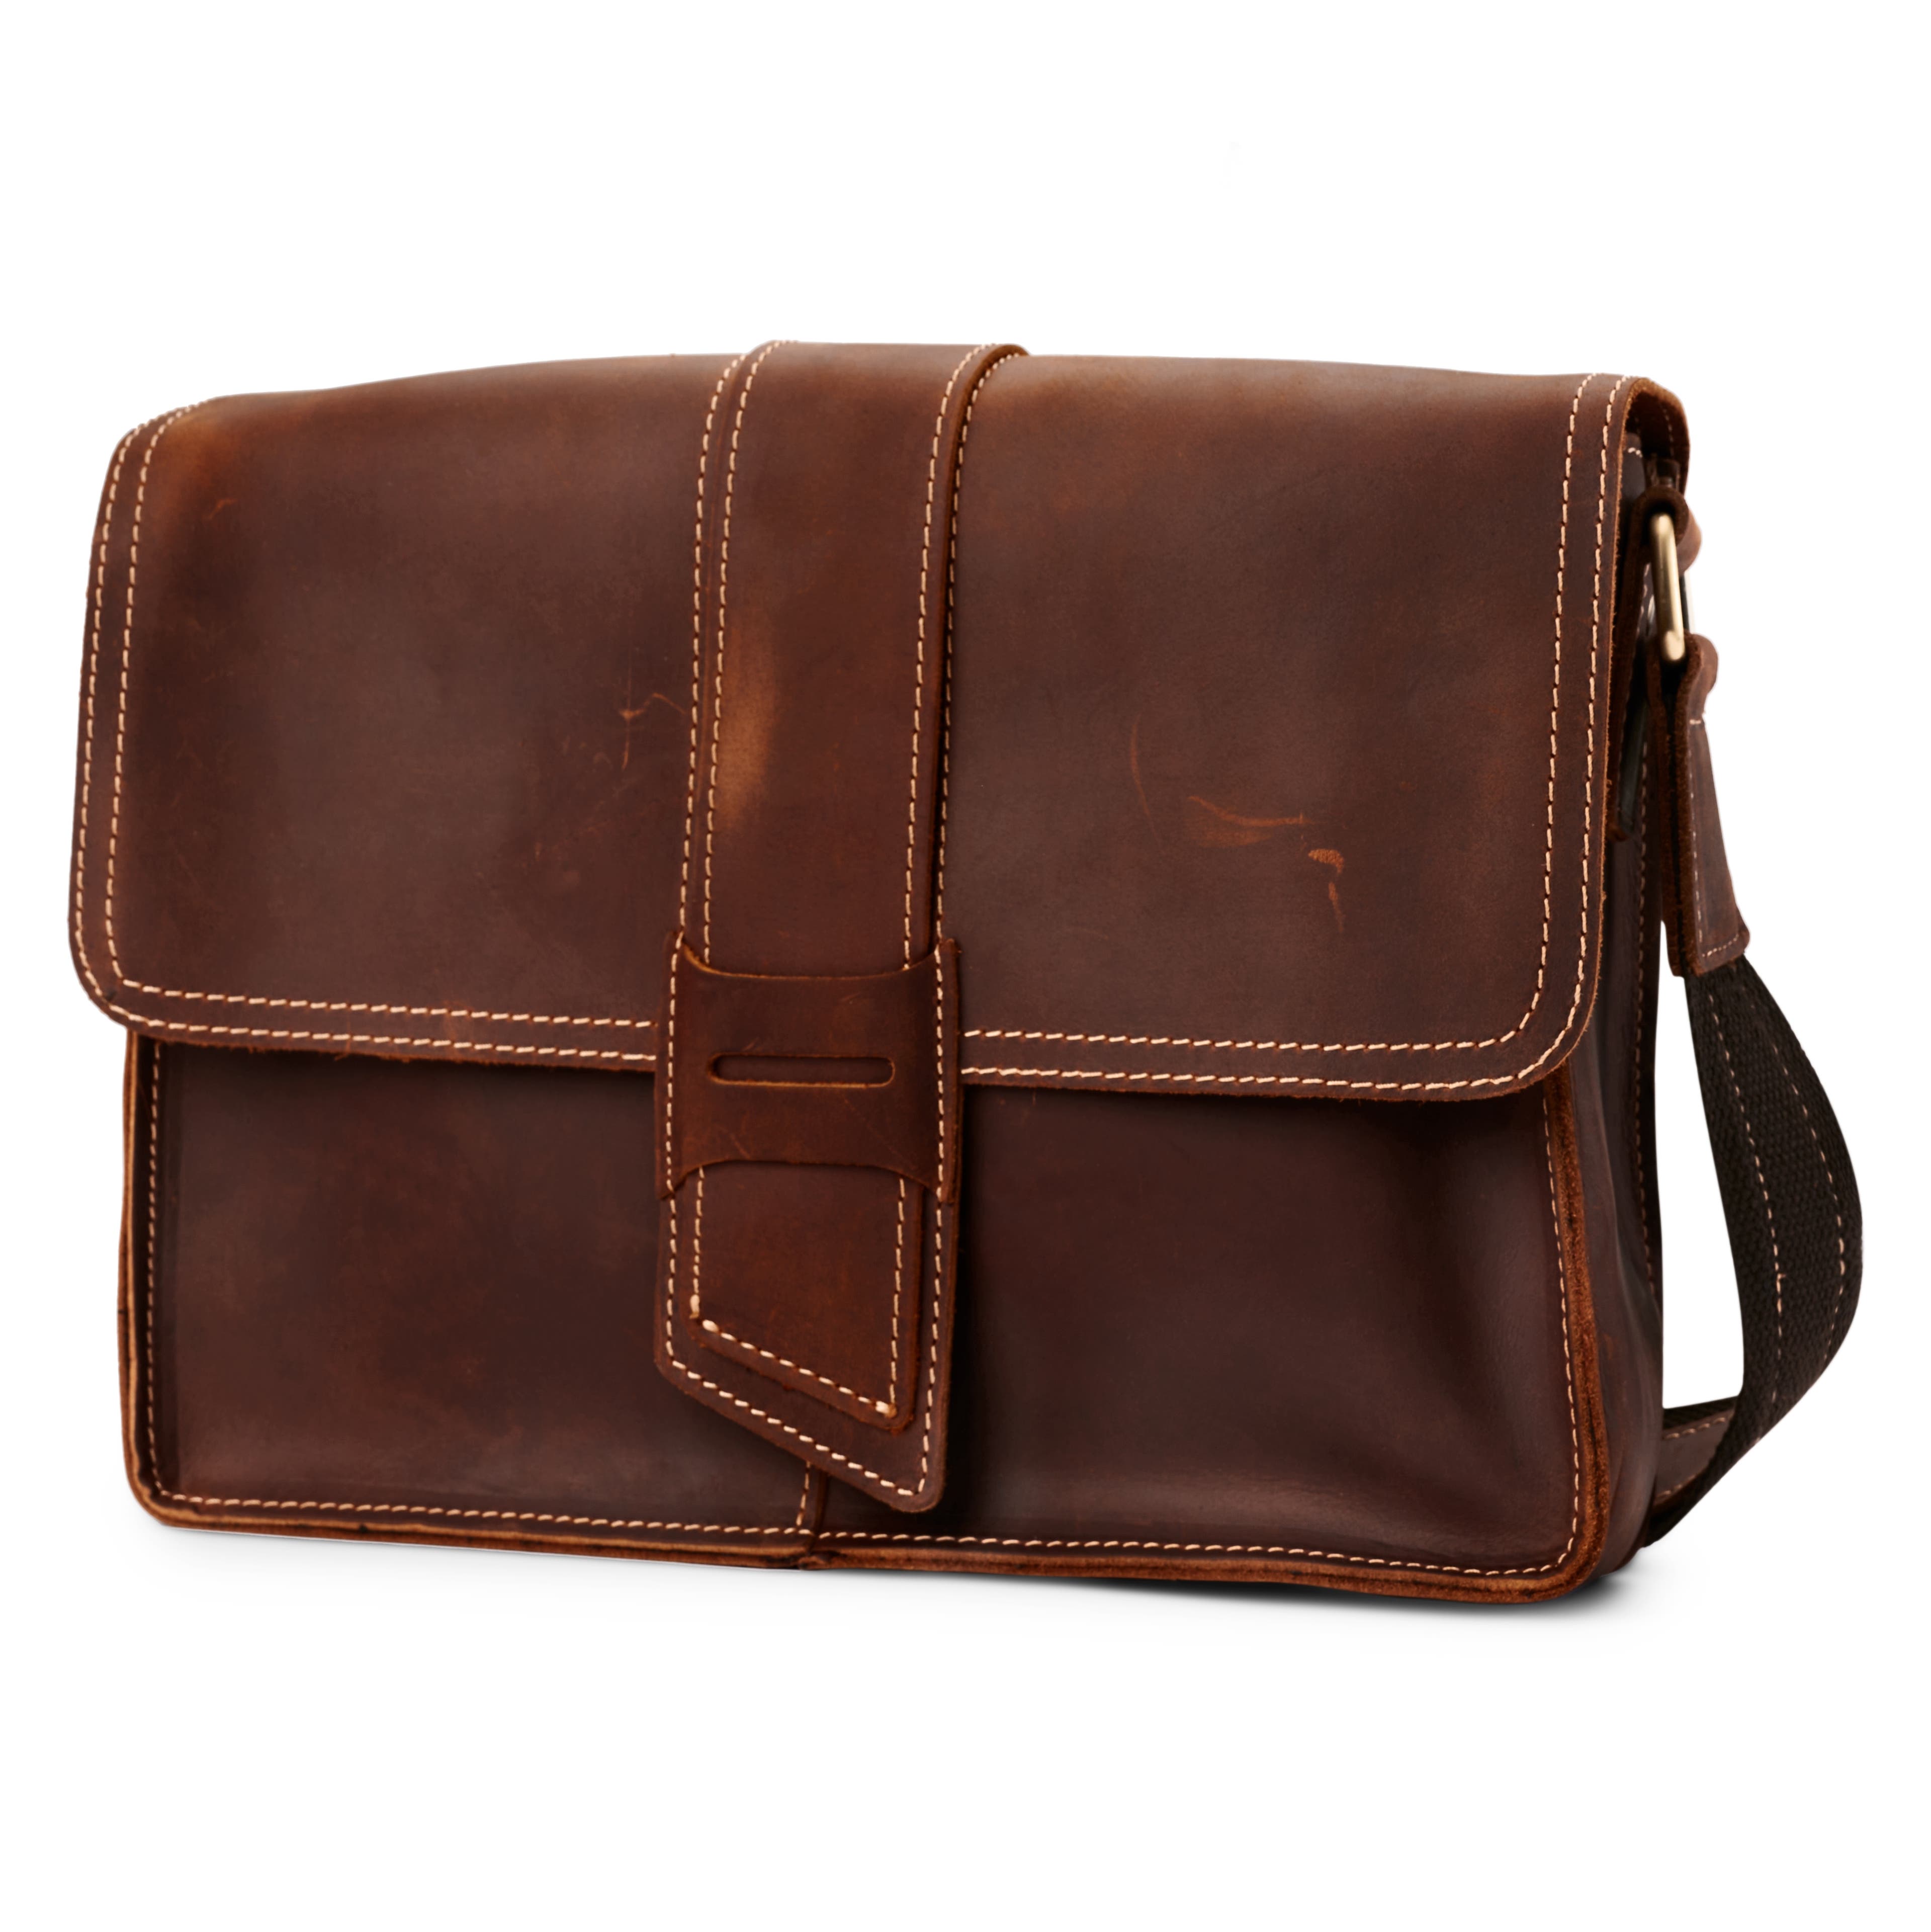 Bolso satchel de cuero marrón oscuro desgastado